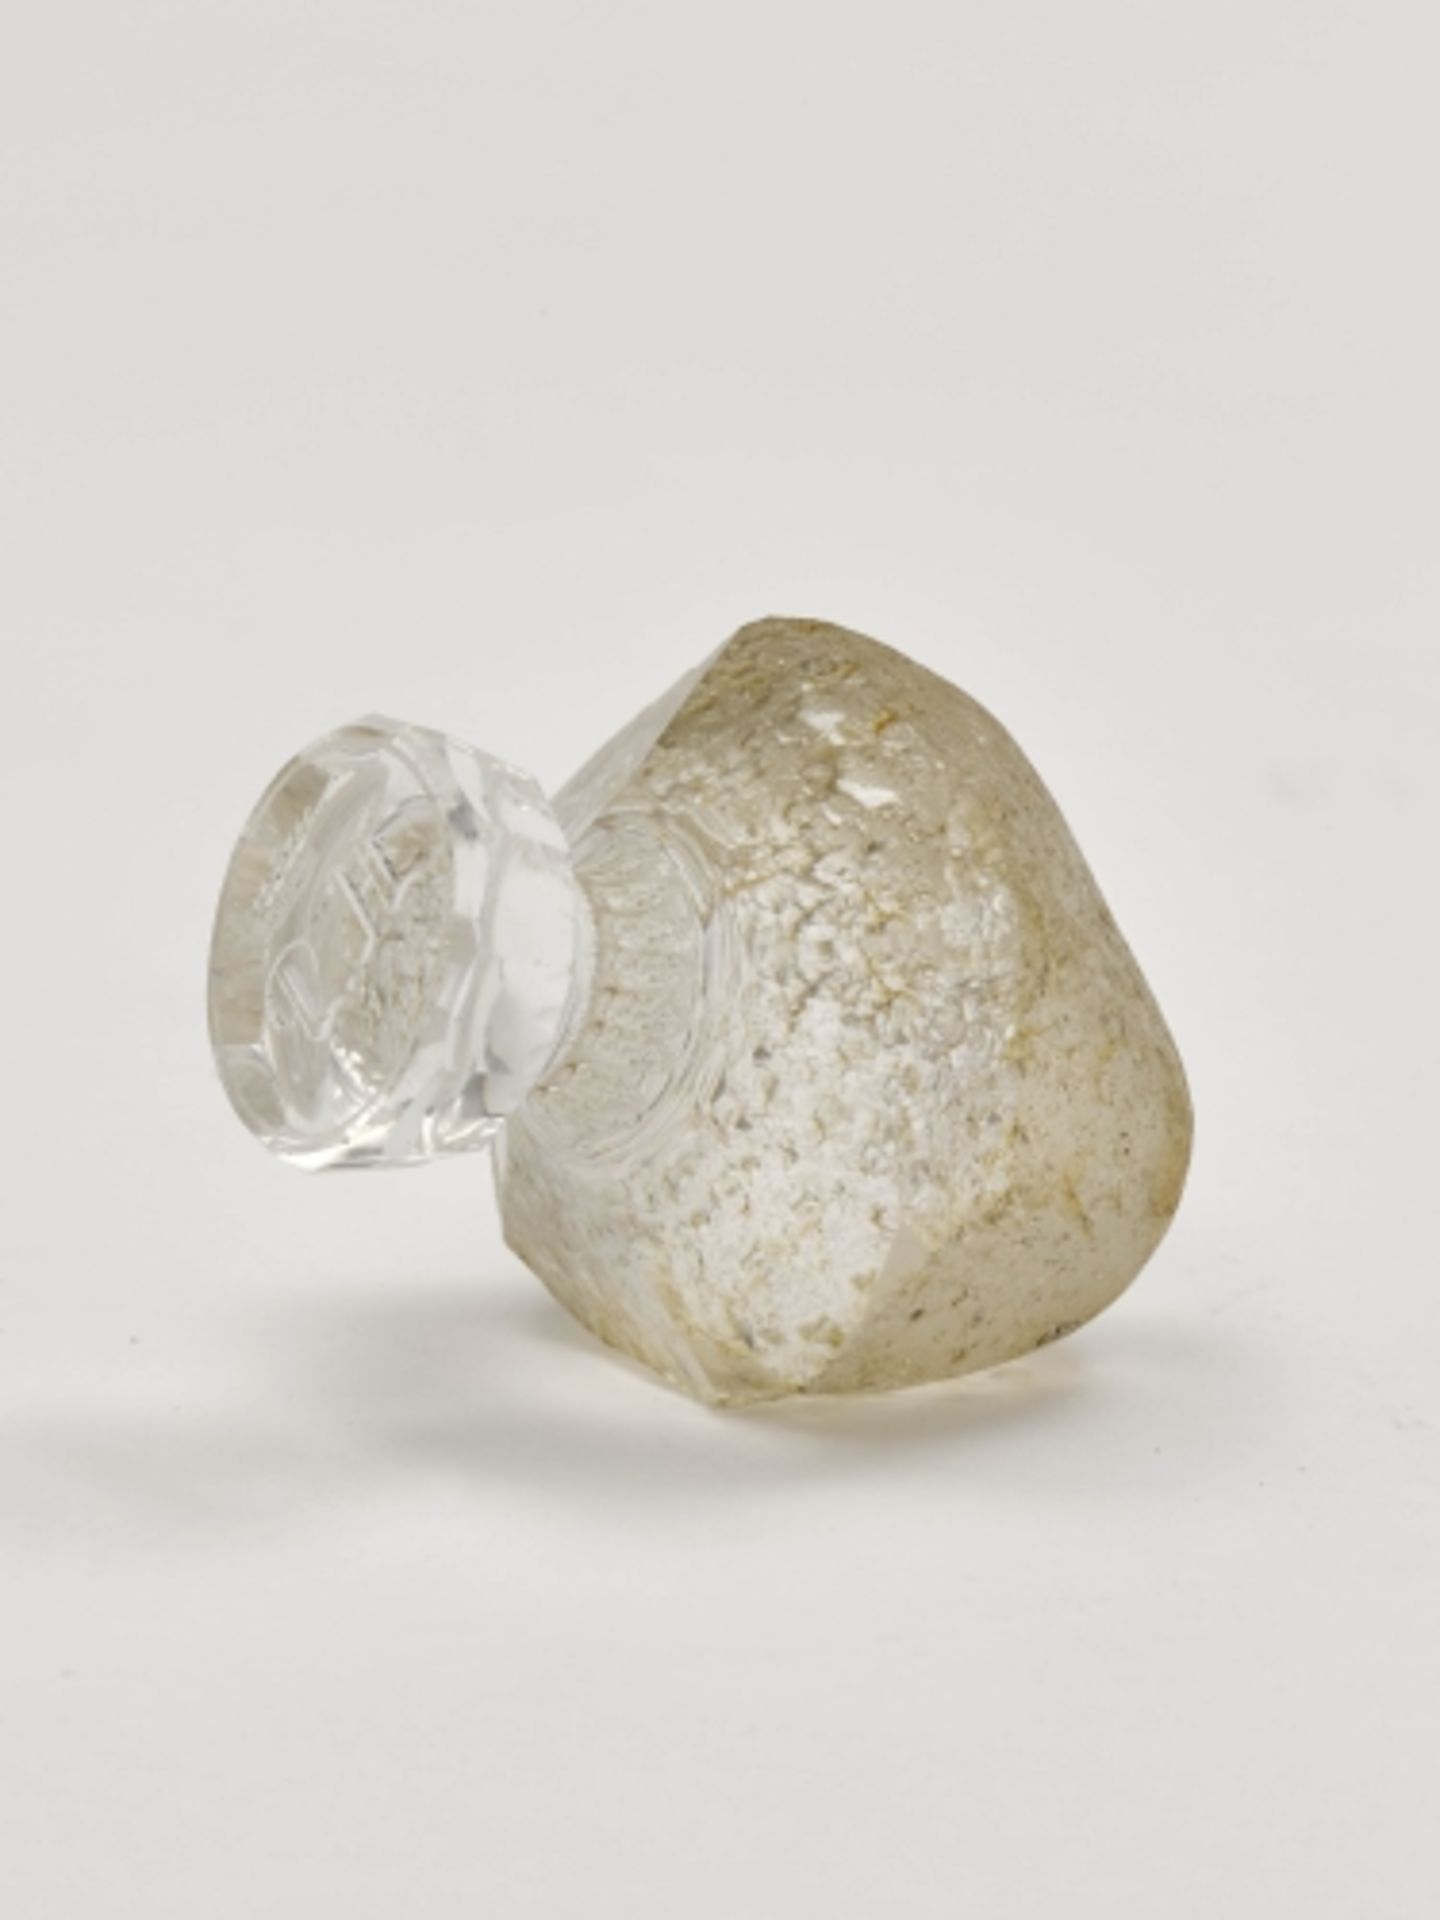 Petschaft in PilzformWohl Fabergé, um 1900 Bergkristall, geschliffen. Mattierte Pilzkappe,